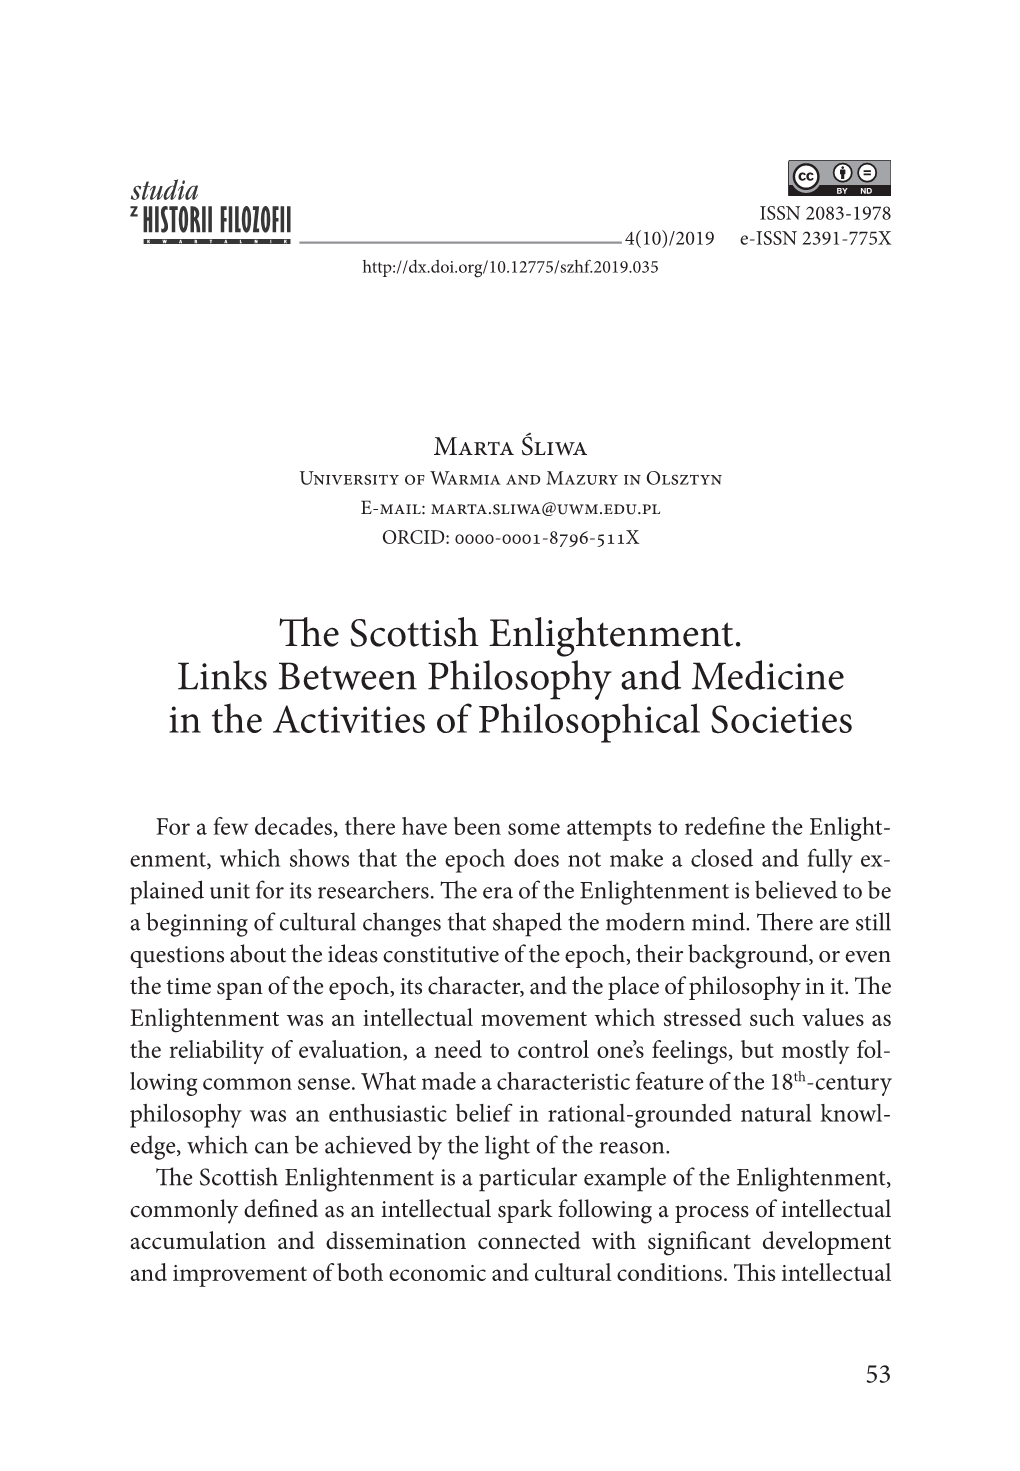 The Scottish Enlightenment. Links Between Philosophy and Medicine in the Activities of Philosophical Societies